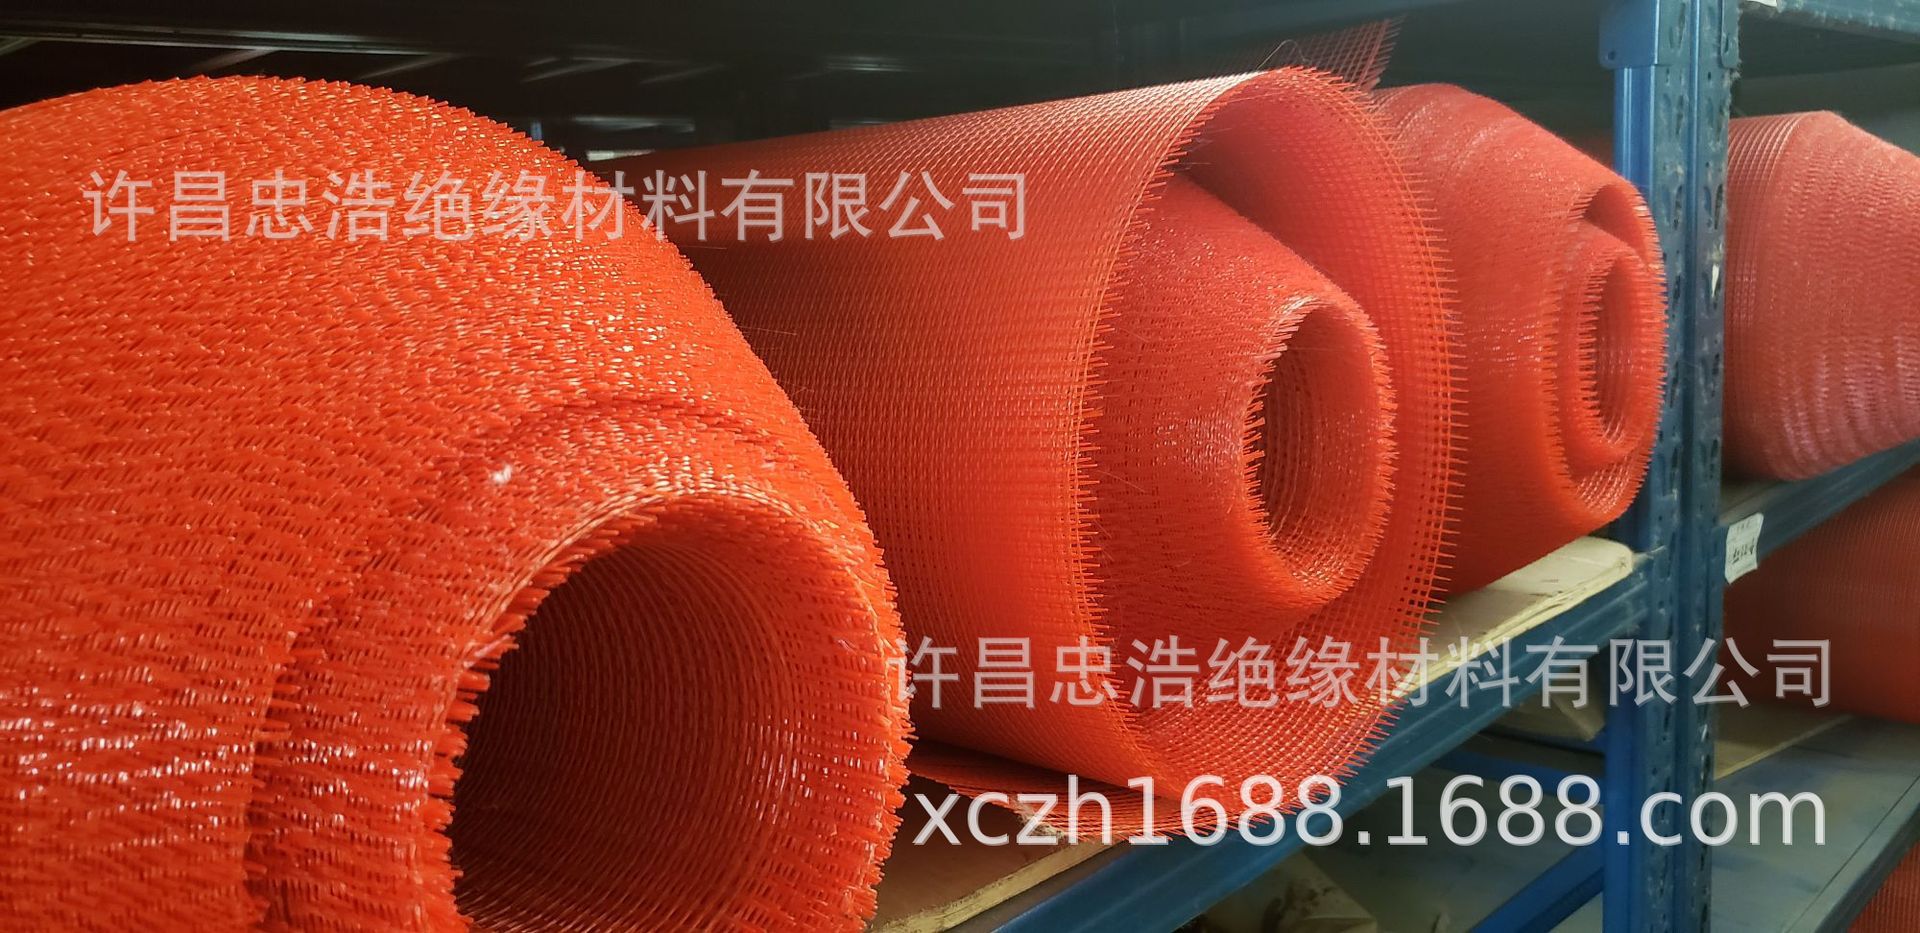 厂家直销玻纤网格布供应专业品质有保障玻纤网格布批发量大从优示例图2